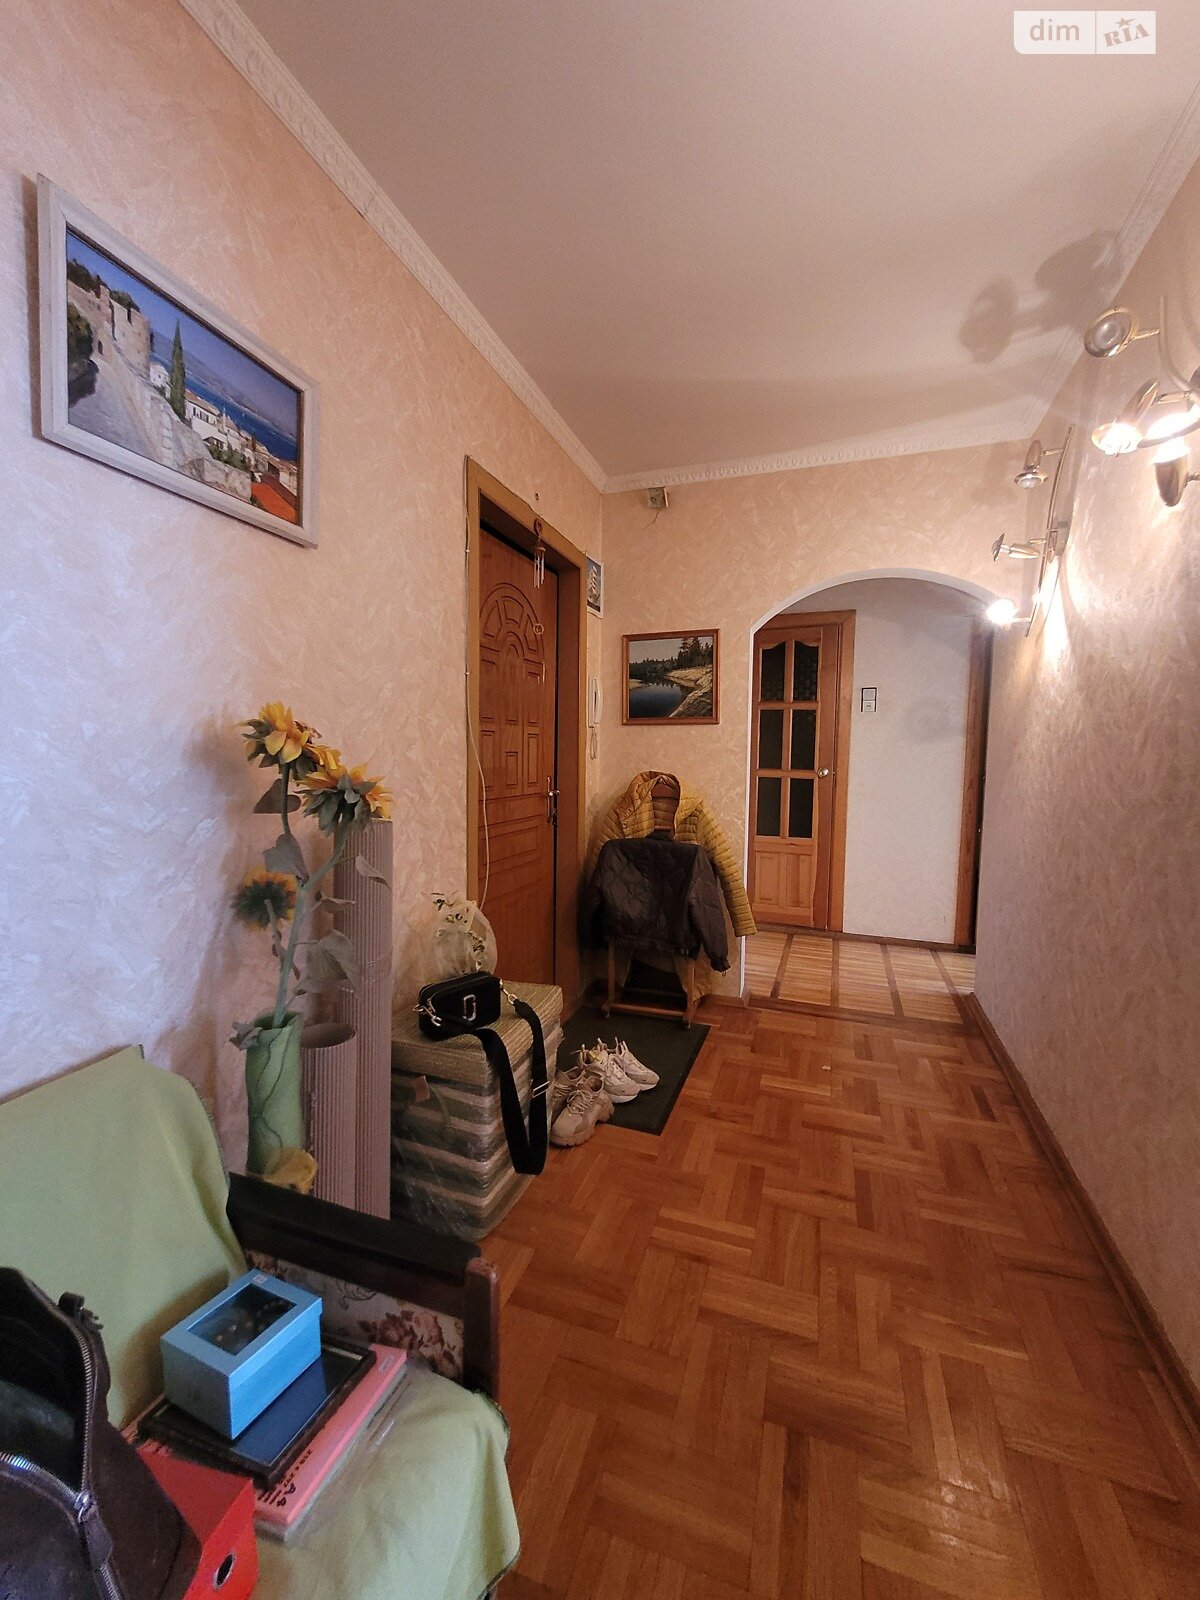 Продажа двухкомнатной квартиры в Житомире, на ул. Клосовского Александра 14, район Чулочная фабрика фото 1